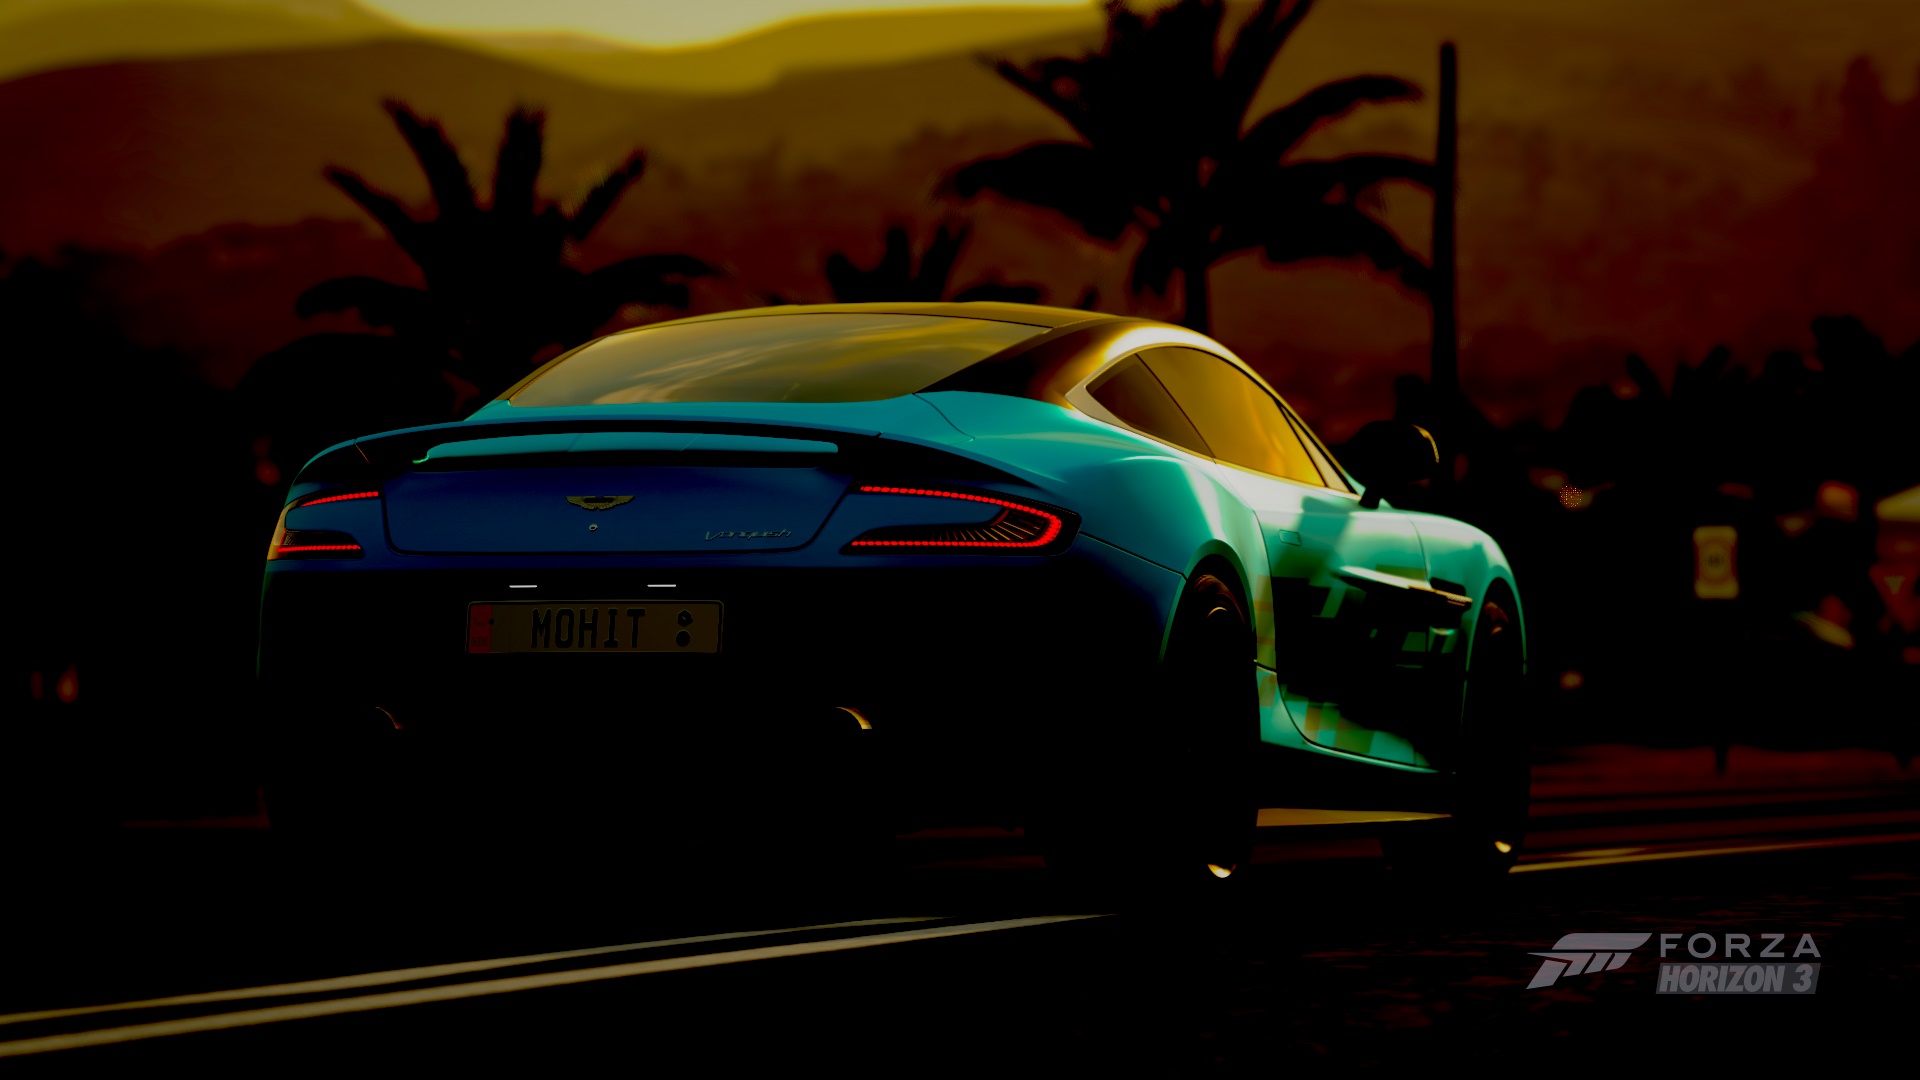 Descarga gratuita de fondo de pantalla para móvil de Coche, Fuerza, Videojuego, Aston Martin Vanquish, Forza Horizon 3.